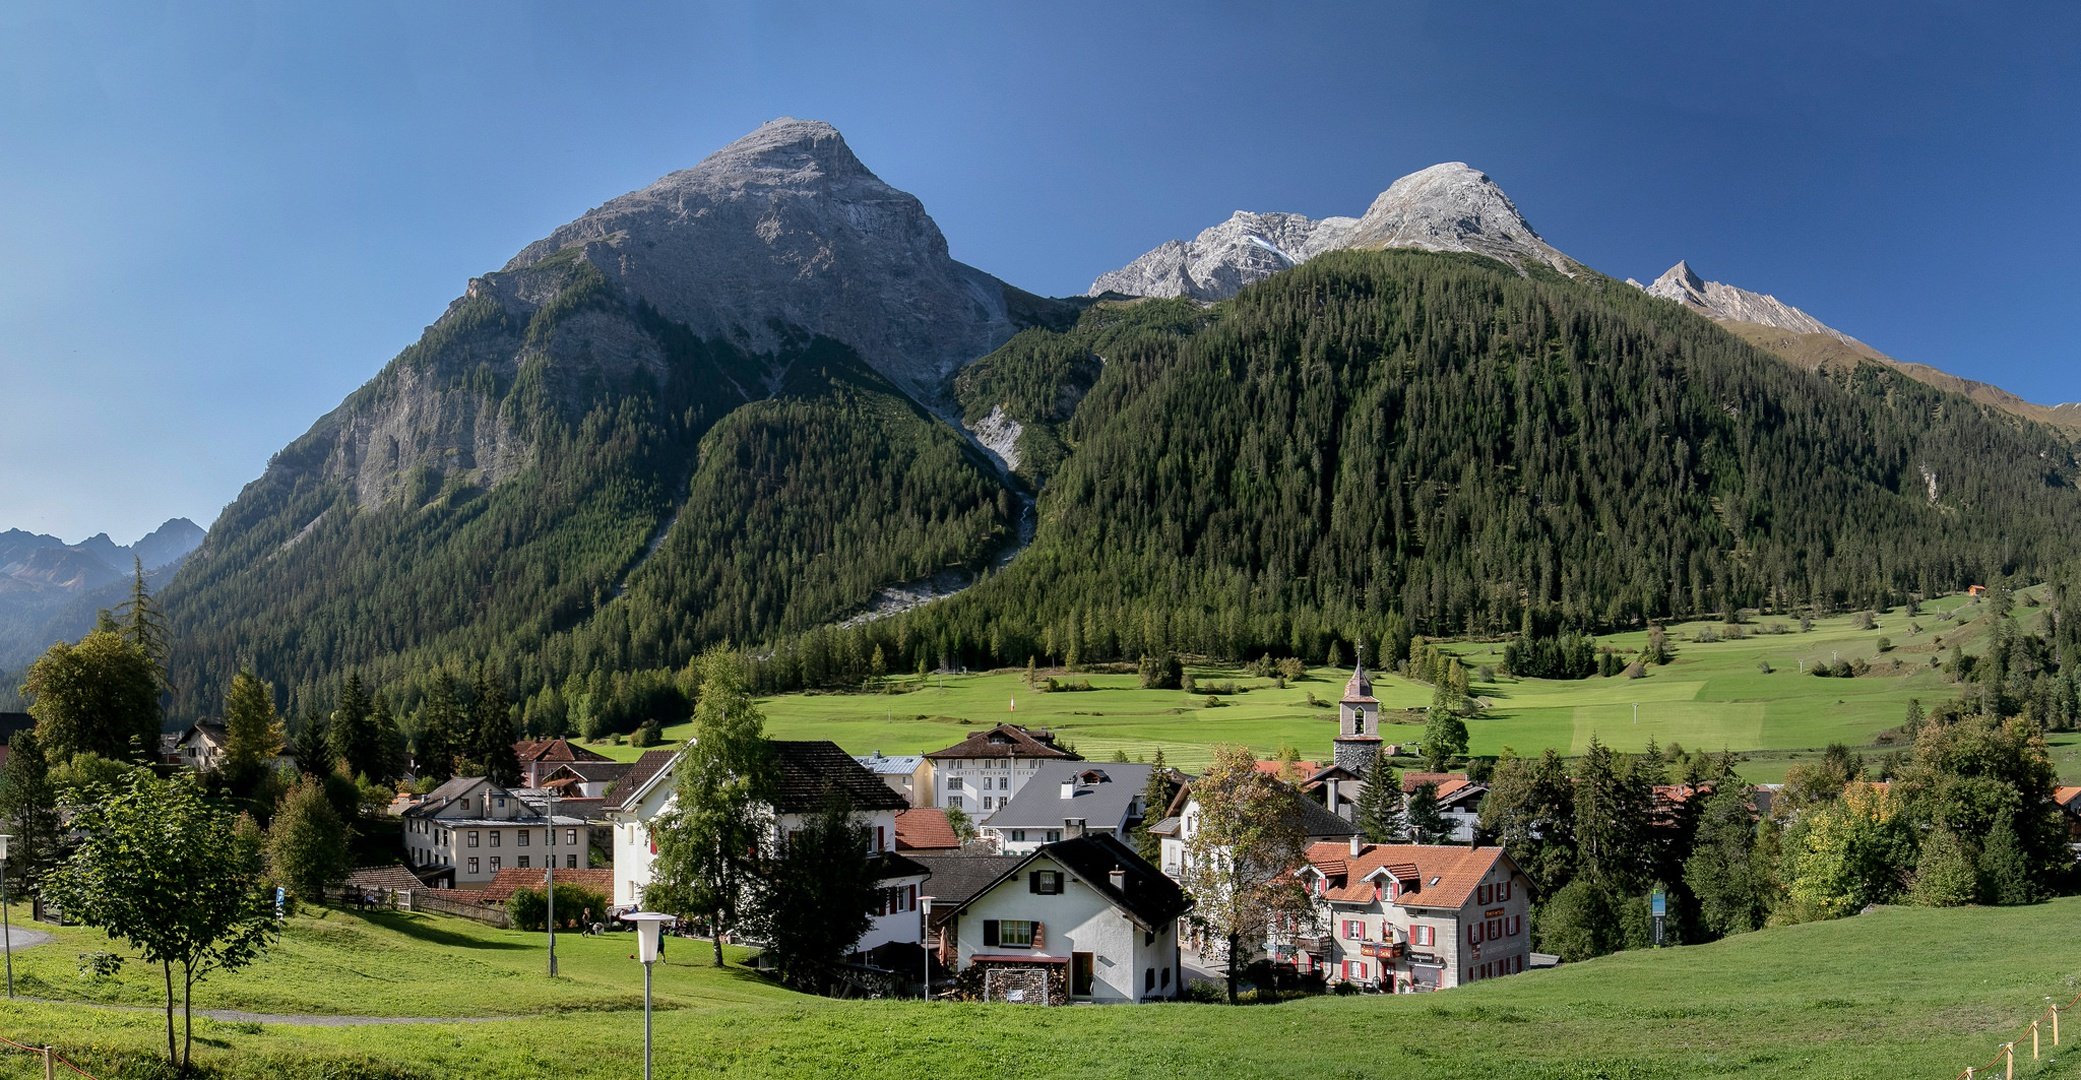 Швейцария маленькая страна. Деревня в Альпах Швейцария. Долина Гриндельвальд Швейцария. Альпийские деревни в Швейцарии. Альпийские горы в Швейцарии.